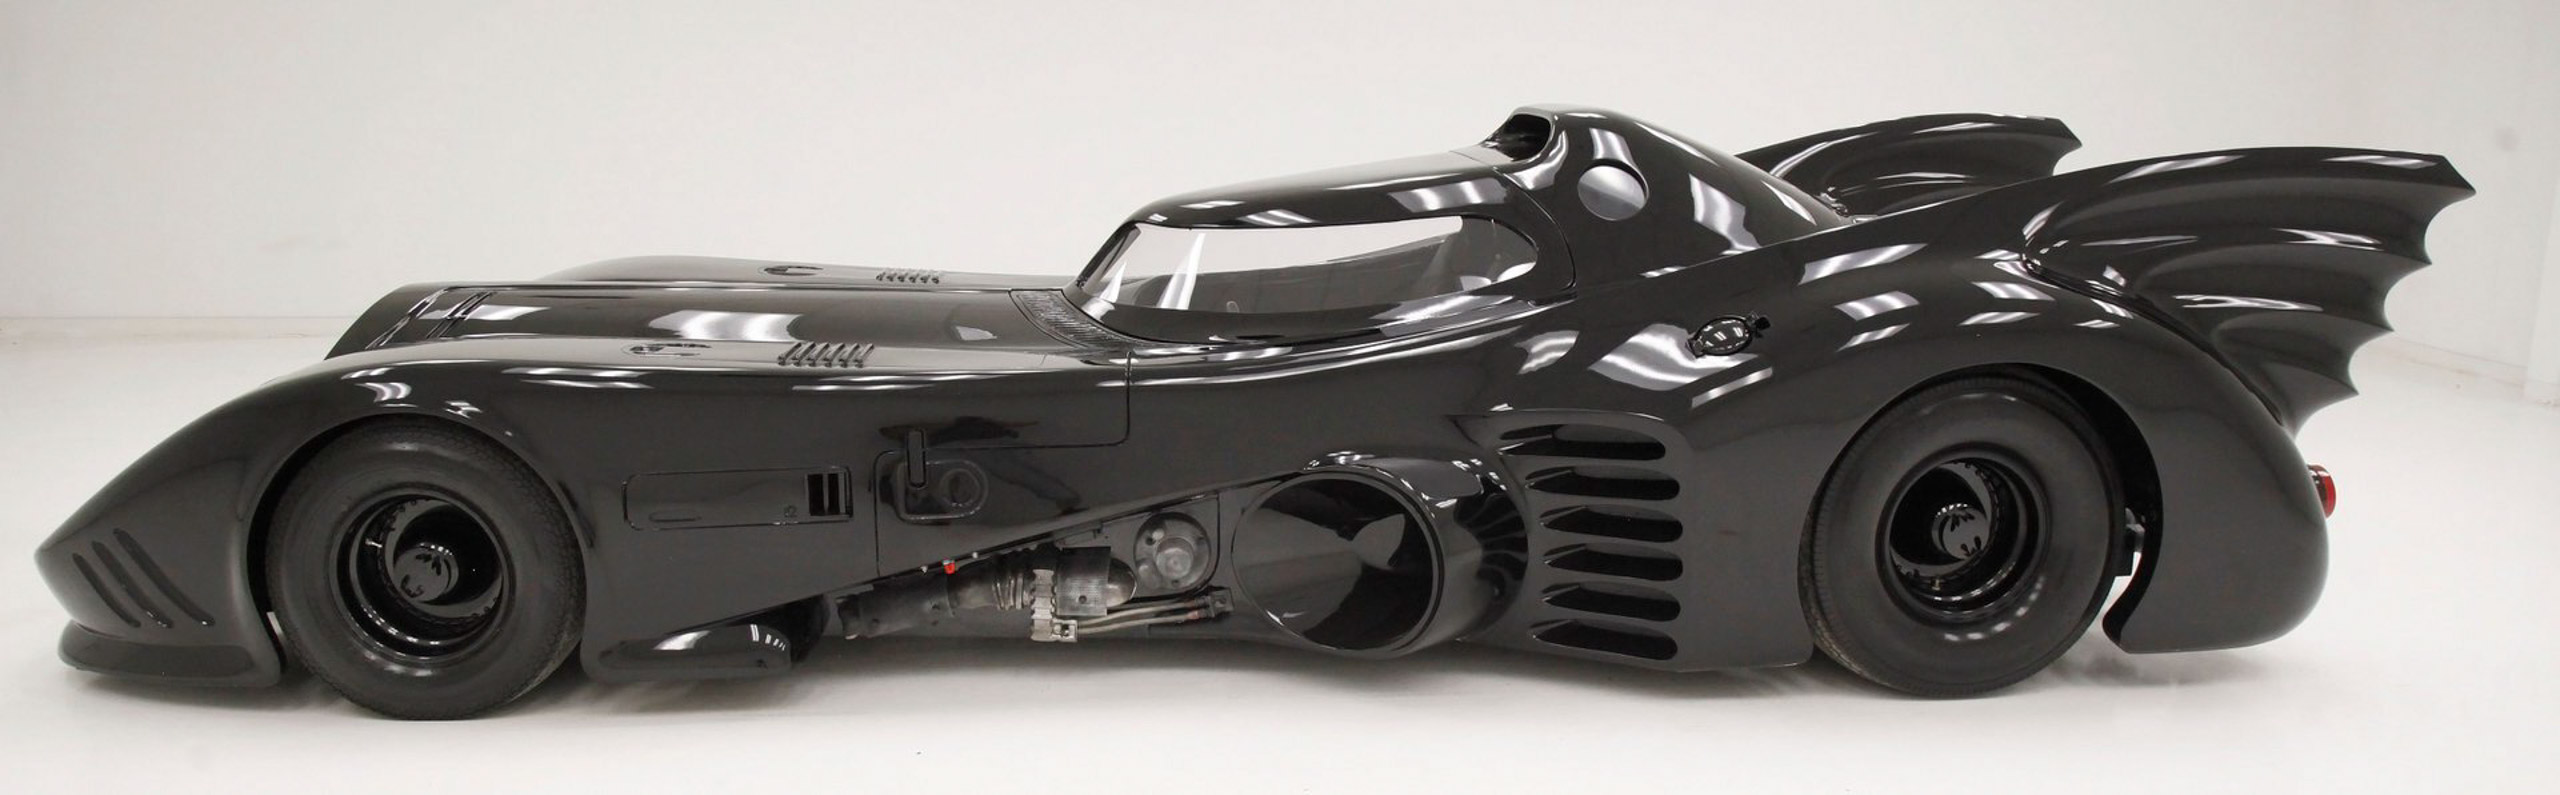 El auto de colección perfecto es este Batimóvil de la película “Batman” de  Tim Burton - Fuel Car Magazine